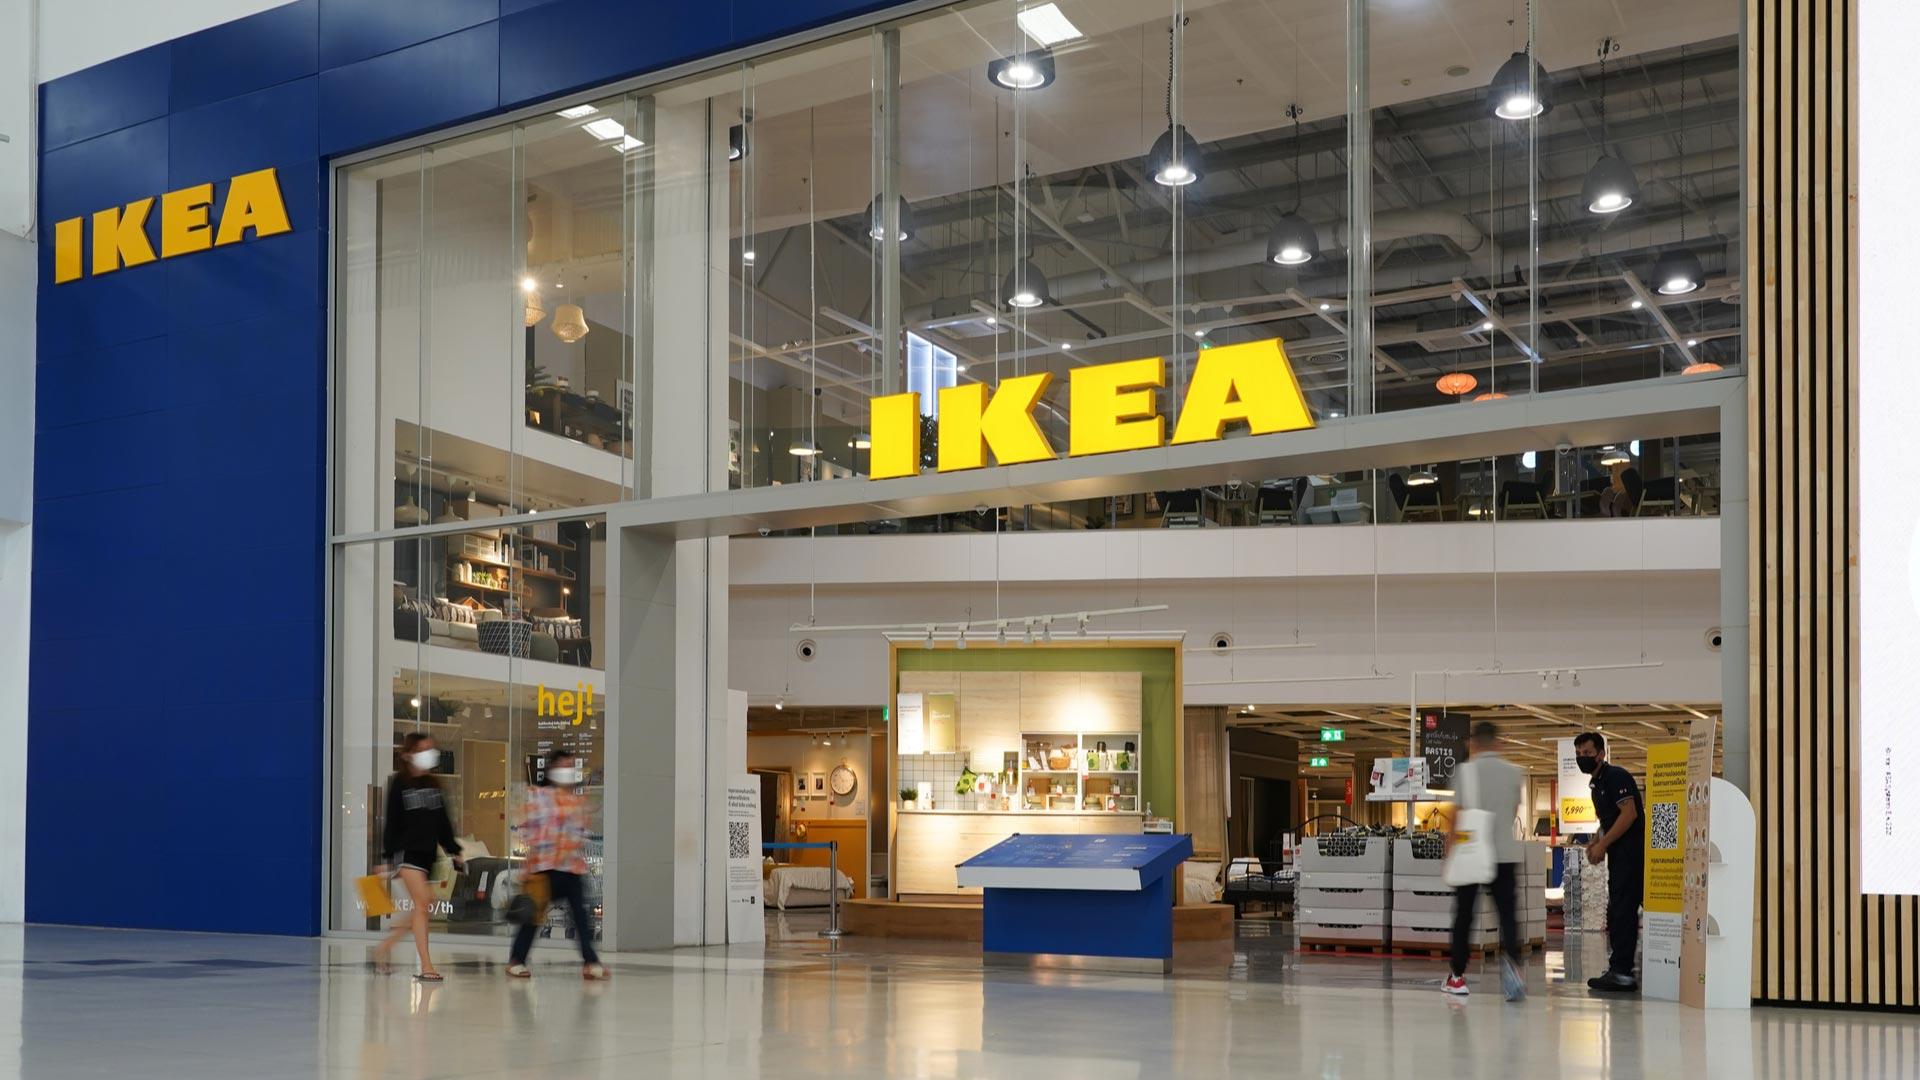 IKEA PISA RICERCA PERSONALE DI VENDITA E MAGAZZINO